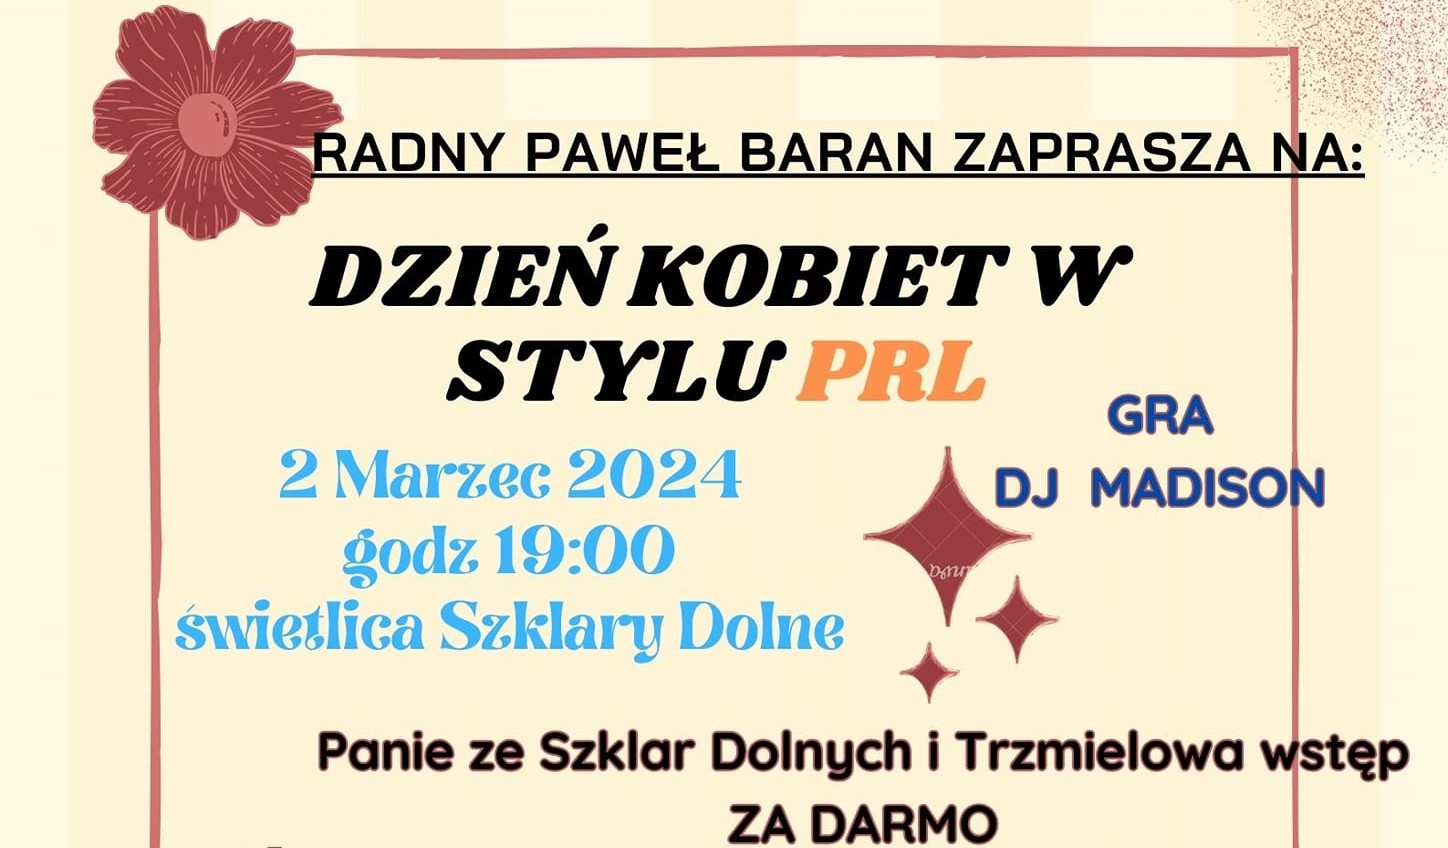 Dzień kobiet w stylu PRL w Szklarach Dolnych 